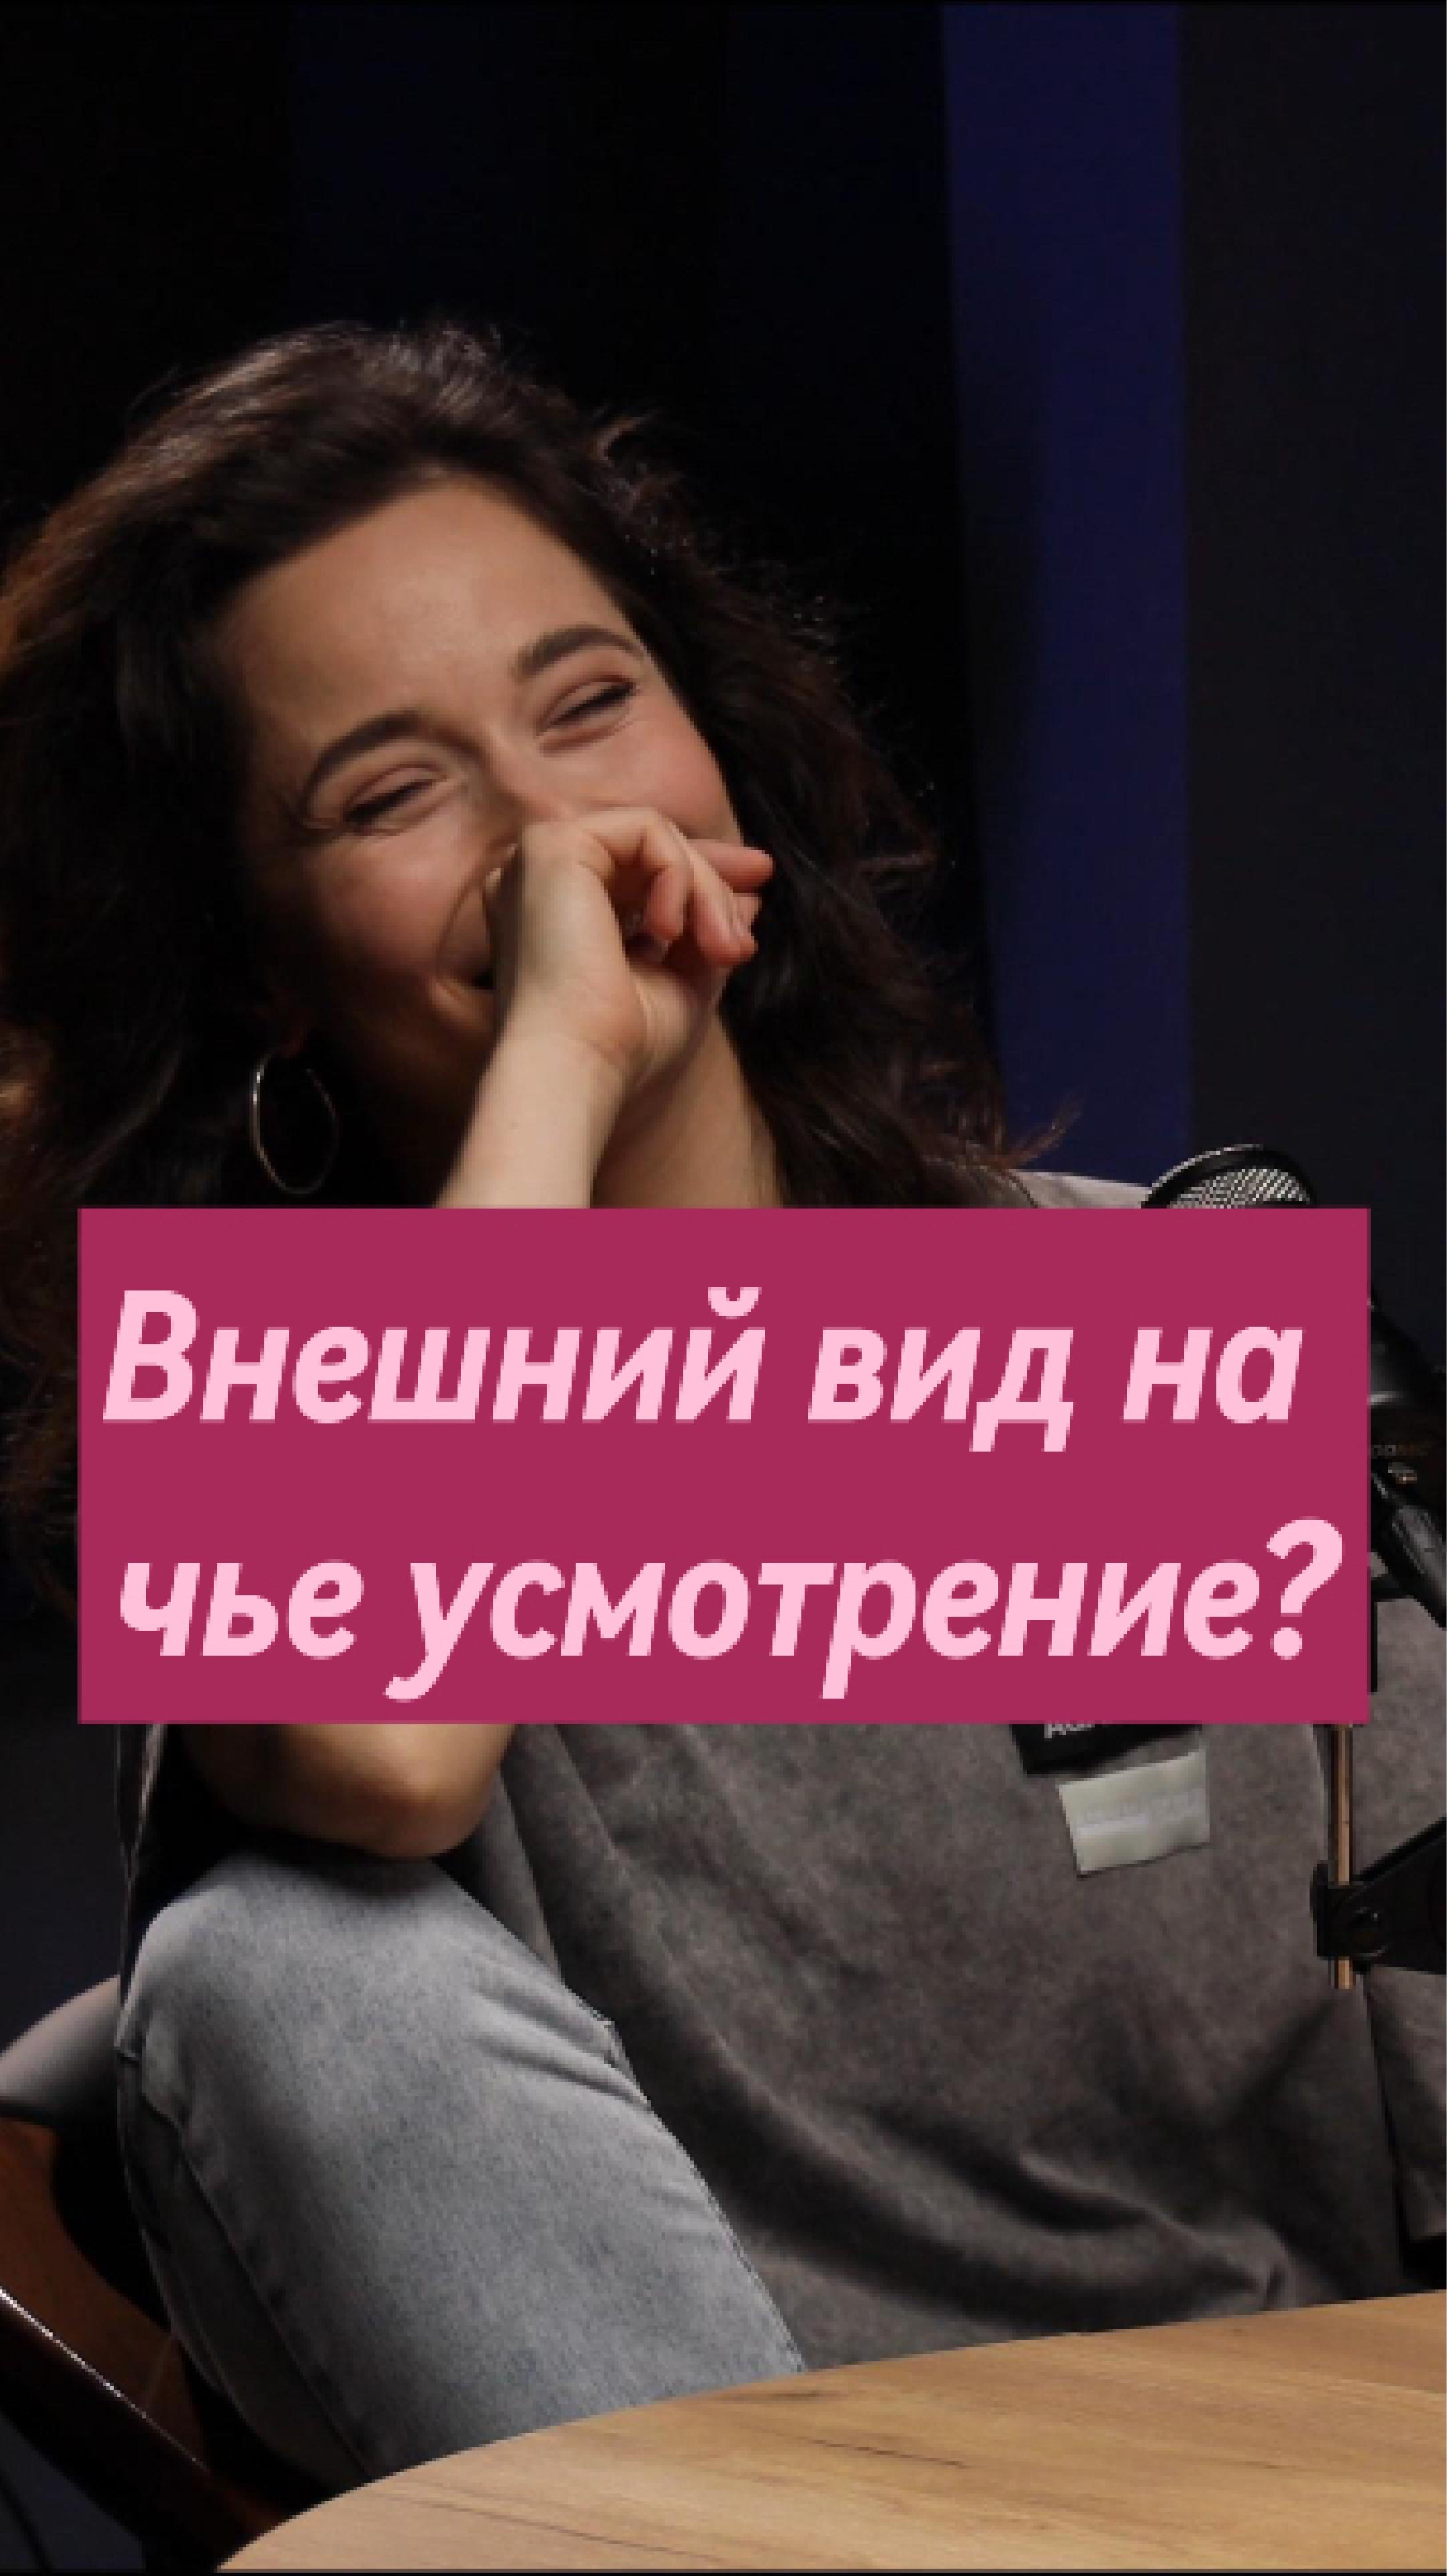 Кто угадает о ком речь? Ответ в полной версии интервью ❤️ 
#танцы#танцытнт#танцынатнт#москва #танцор